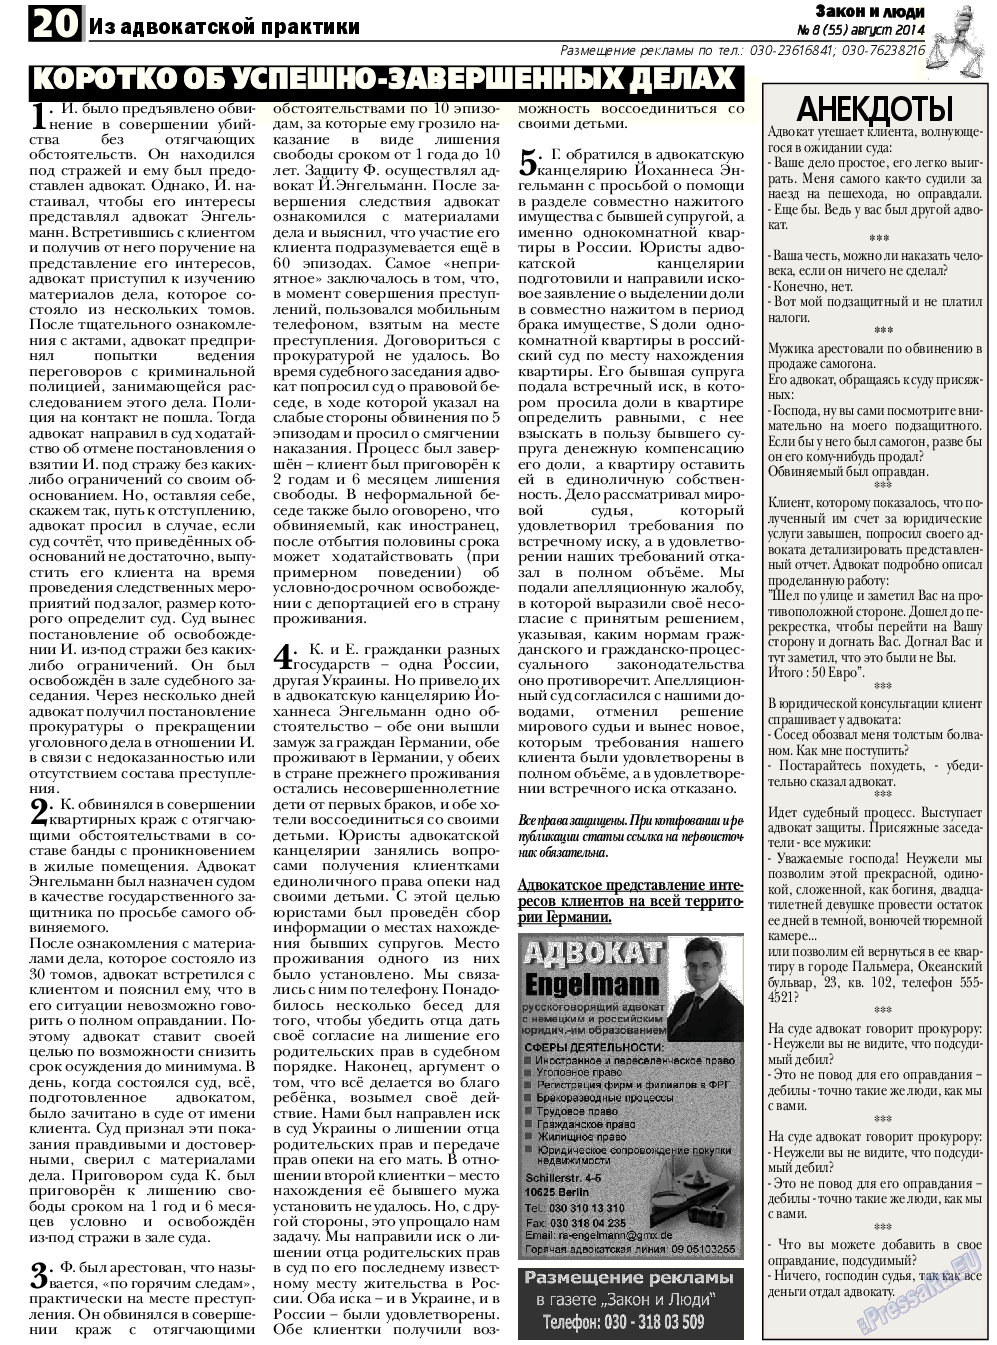 Закон и люди, газета. 2014 №8 стр.20